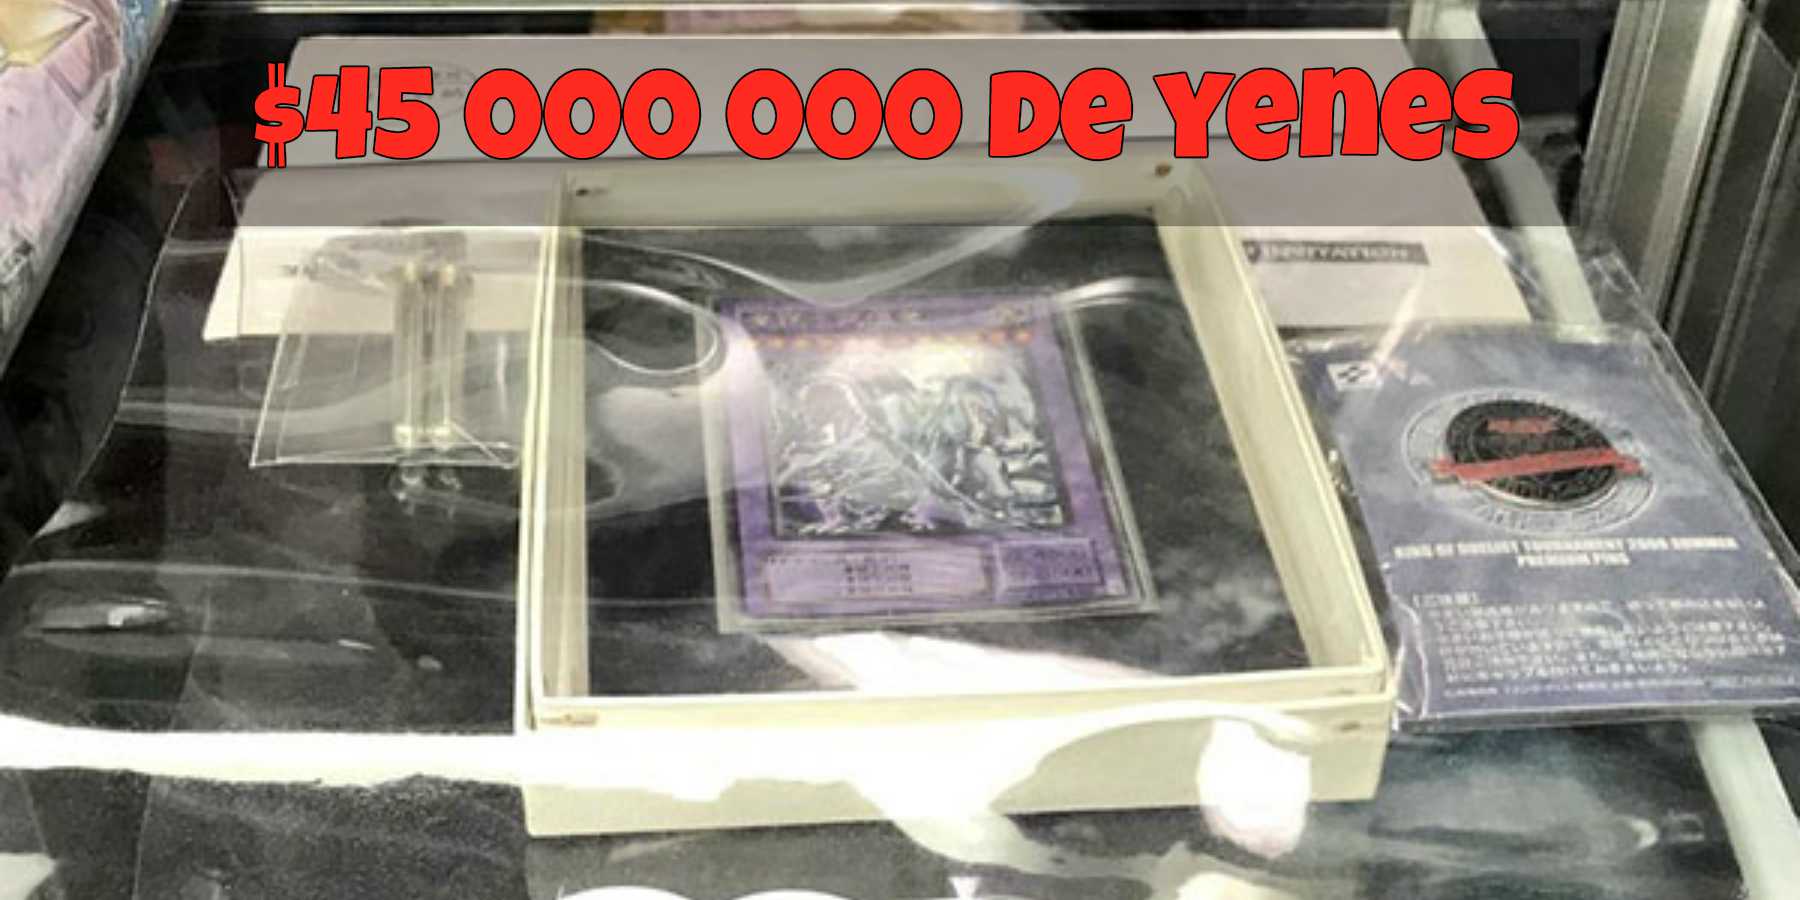 La carta ultra rara de Yu-Gi-Oh que vale más de 400 000 dólares